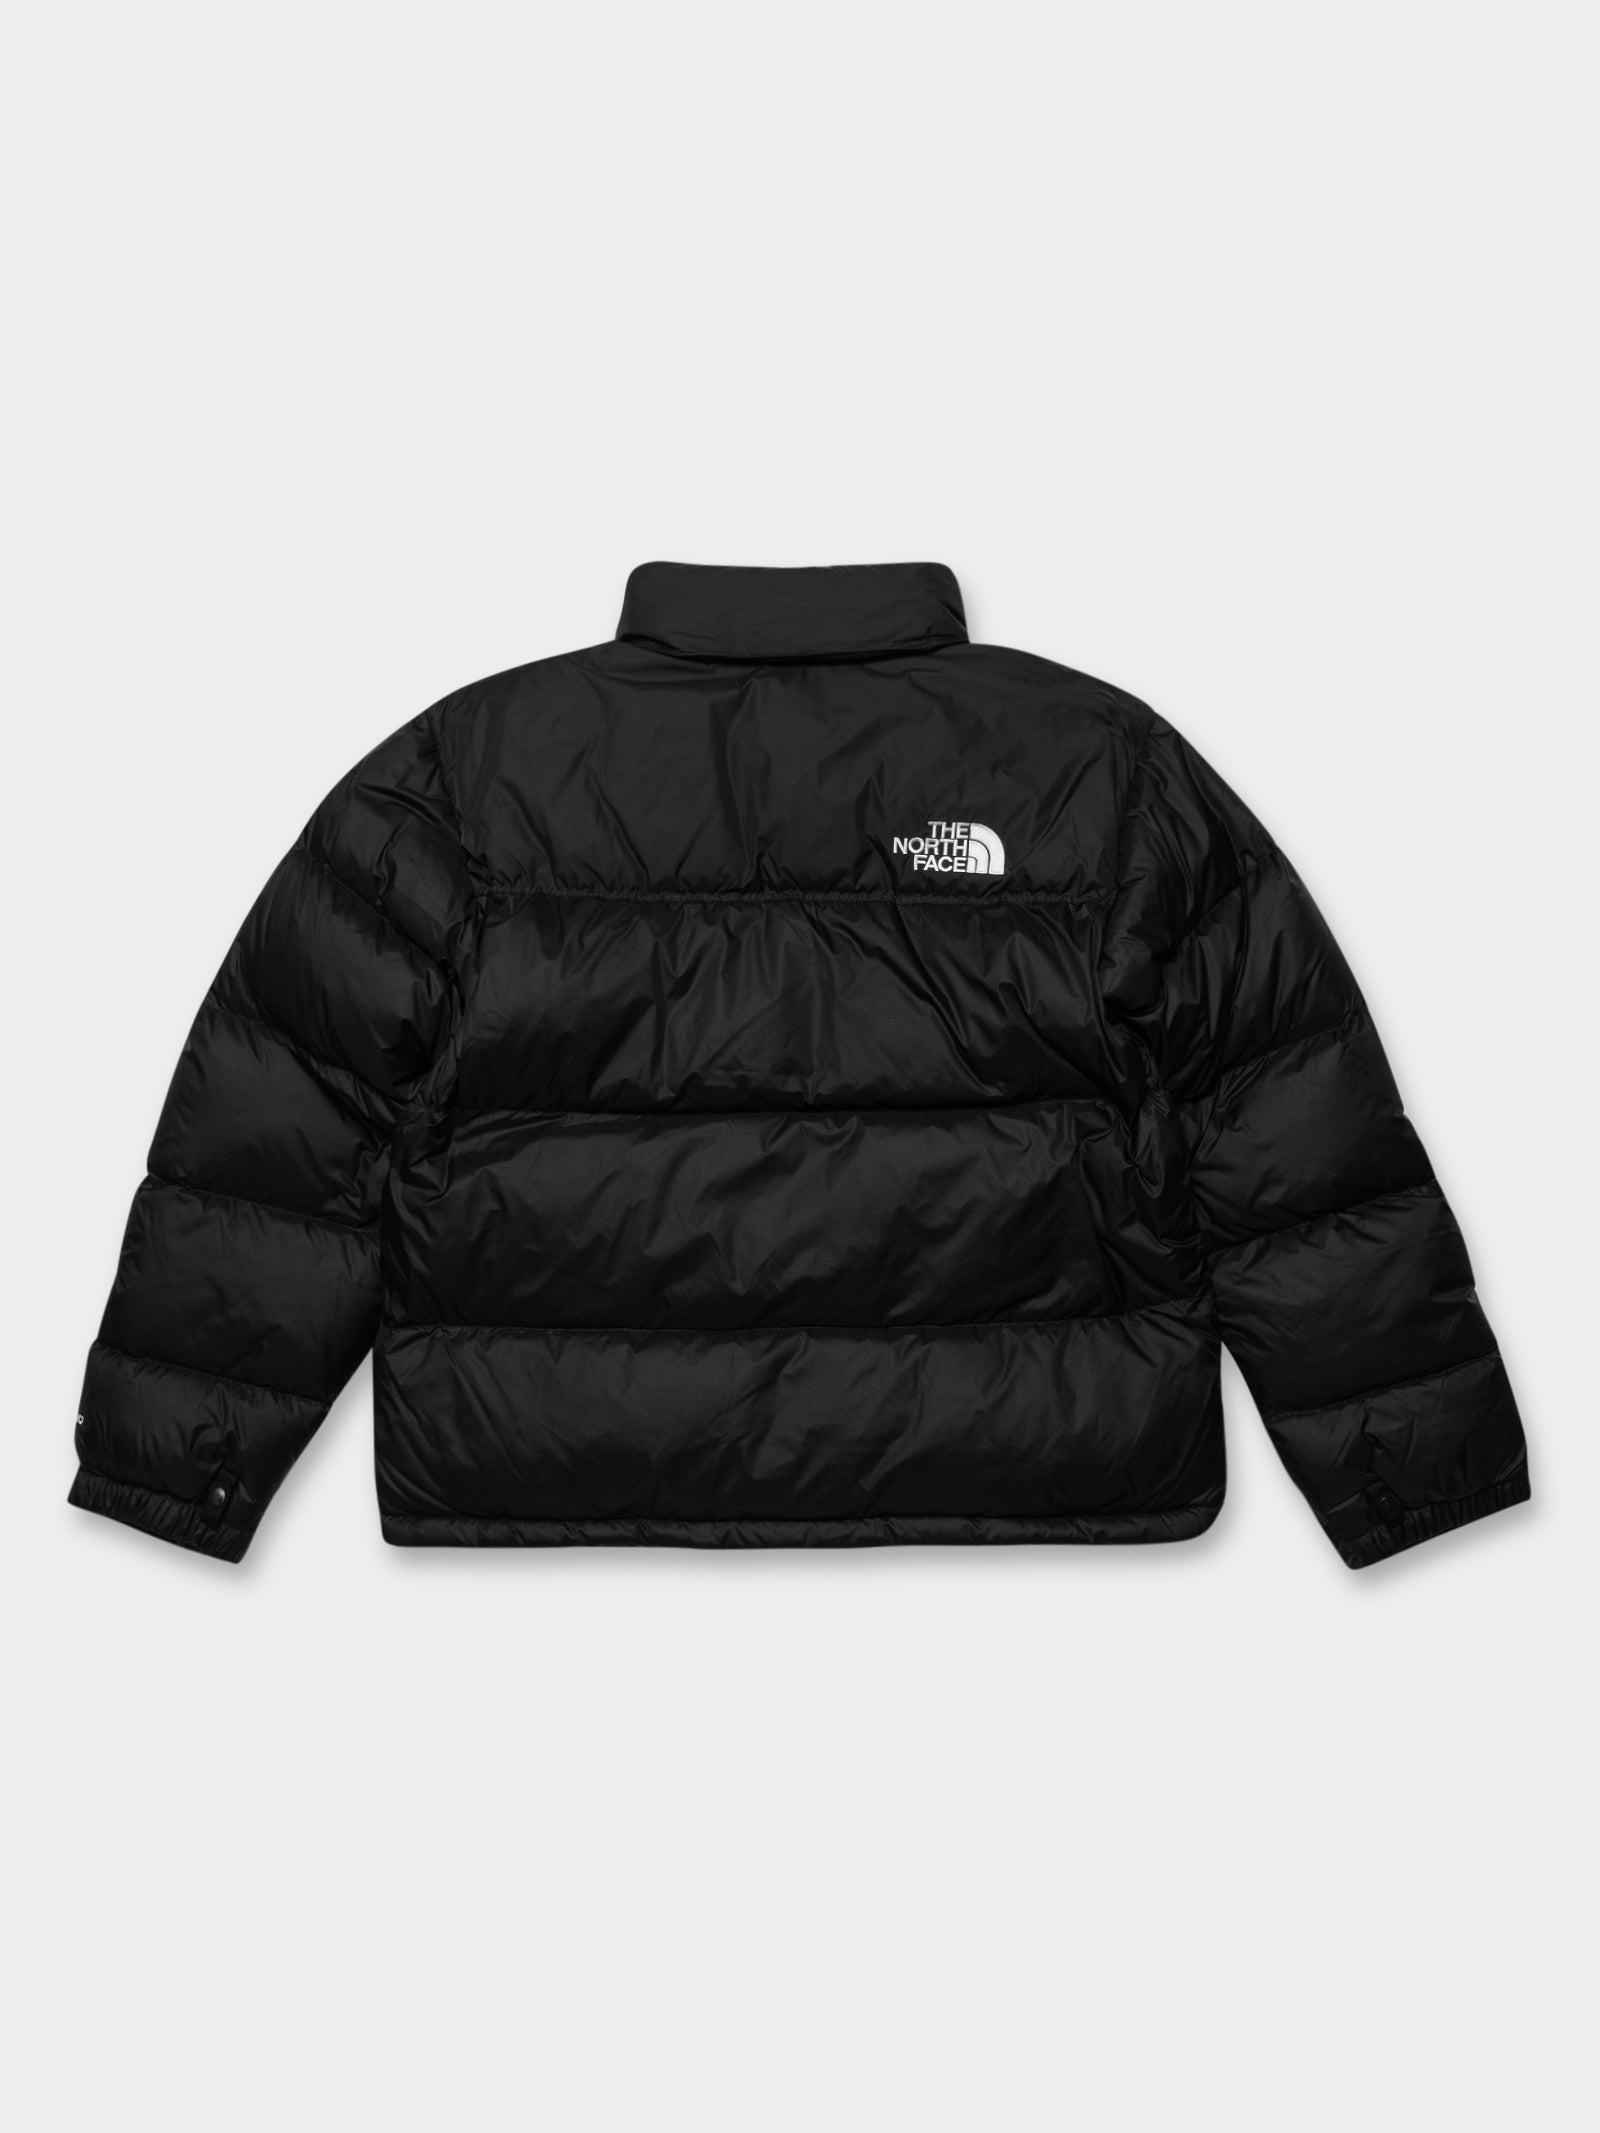 1996 Retro Nuptse Jacket in Black